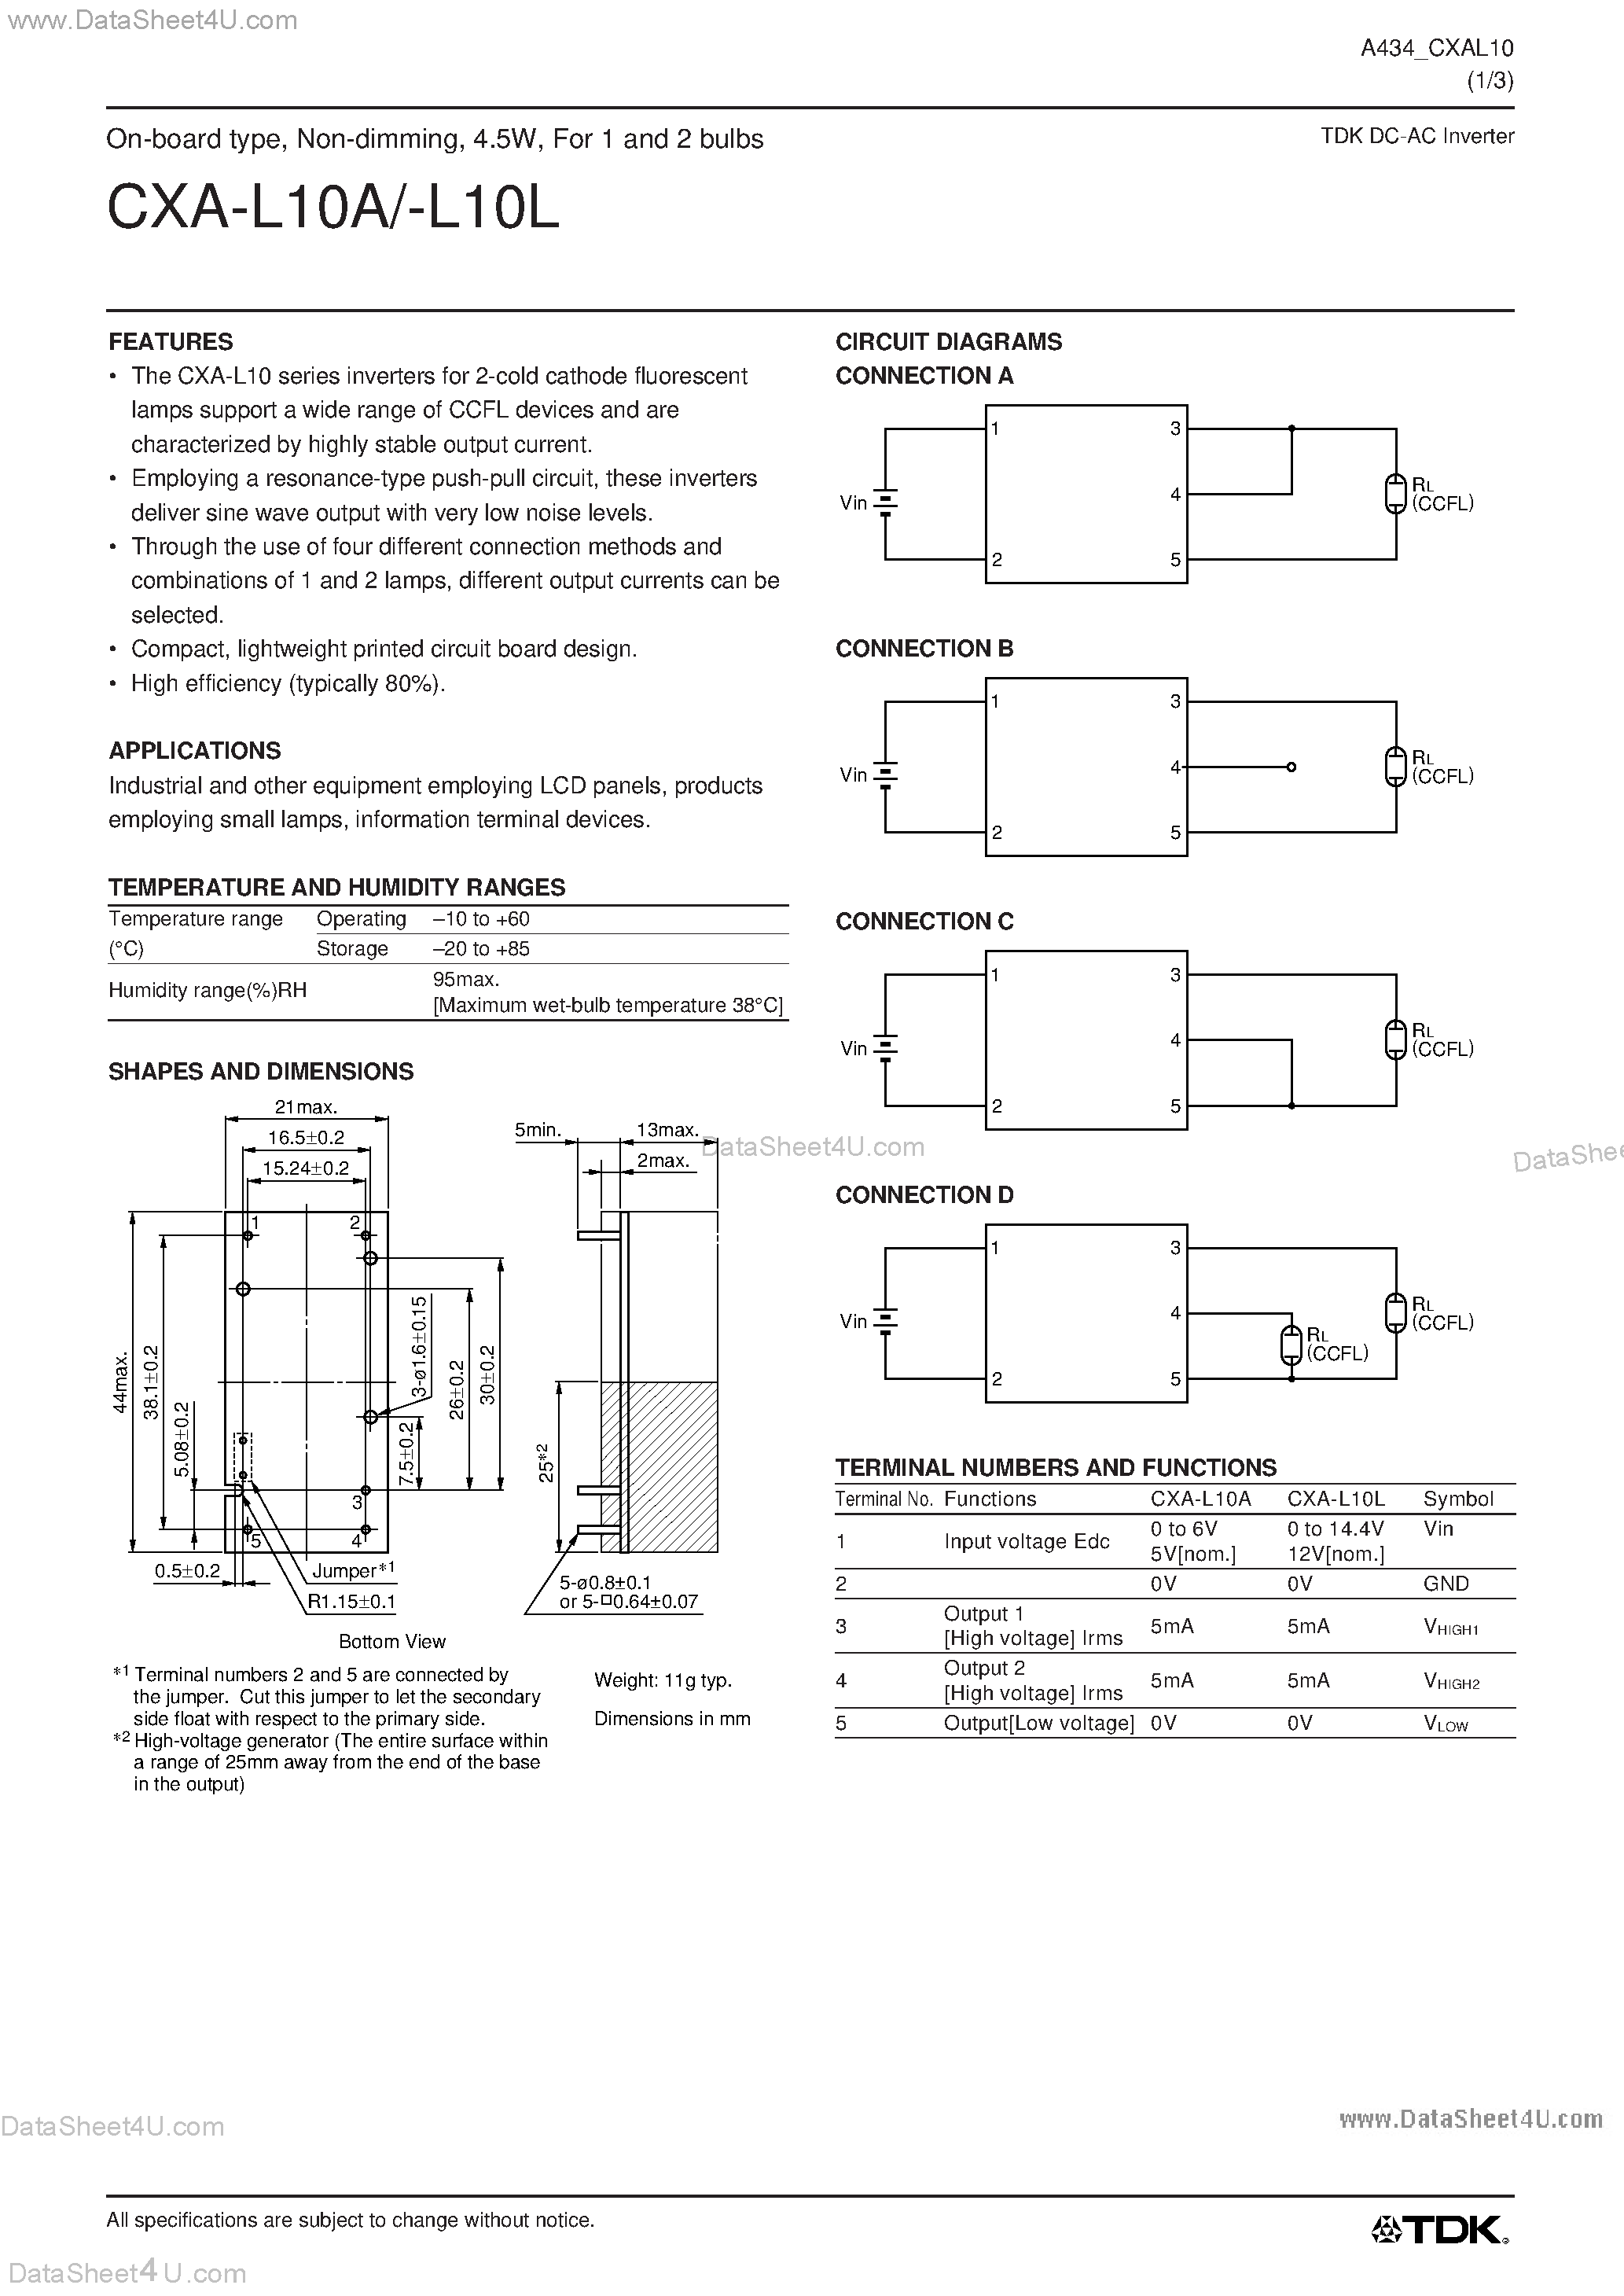 Даташит CXA-L10A - (CXA-L10A/L) DC-AC Inverter страница 1